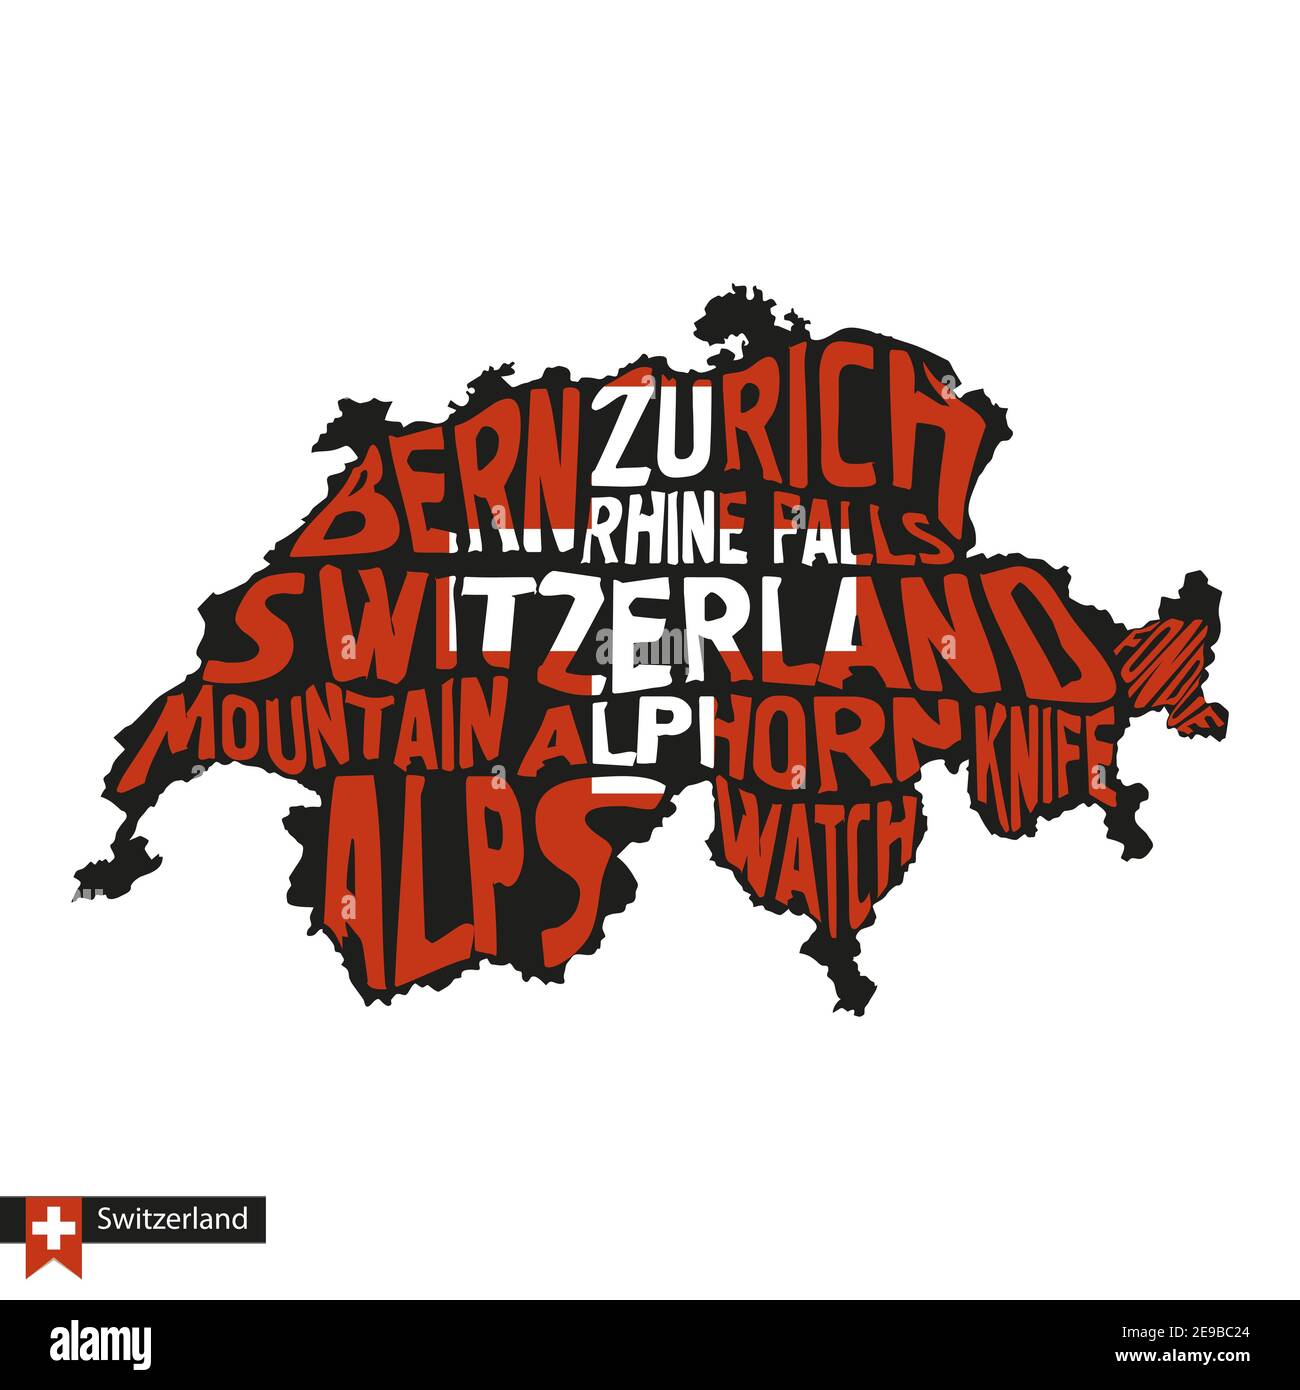 Typografie Karte Silhouette der Schweiz in Schwarz und Fahnenfarben.  Vektorgrafik Stock-Vektorgrafik - Alamy